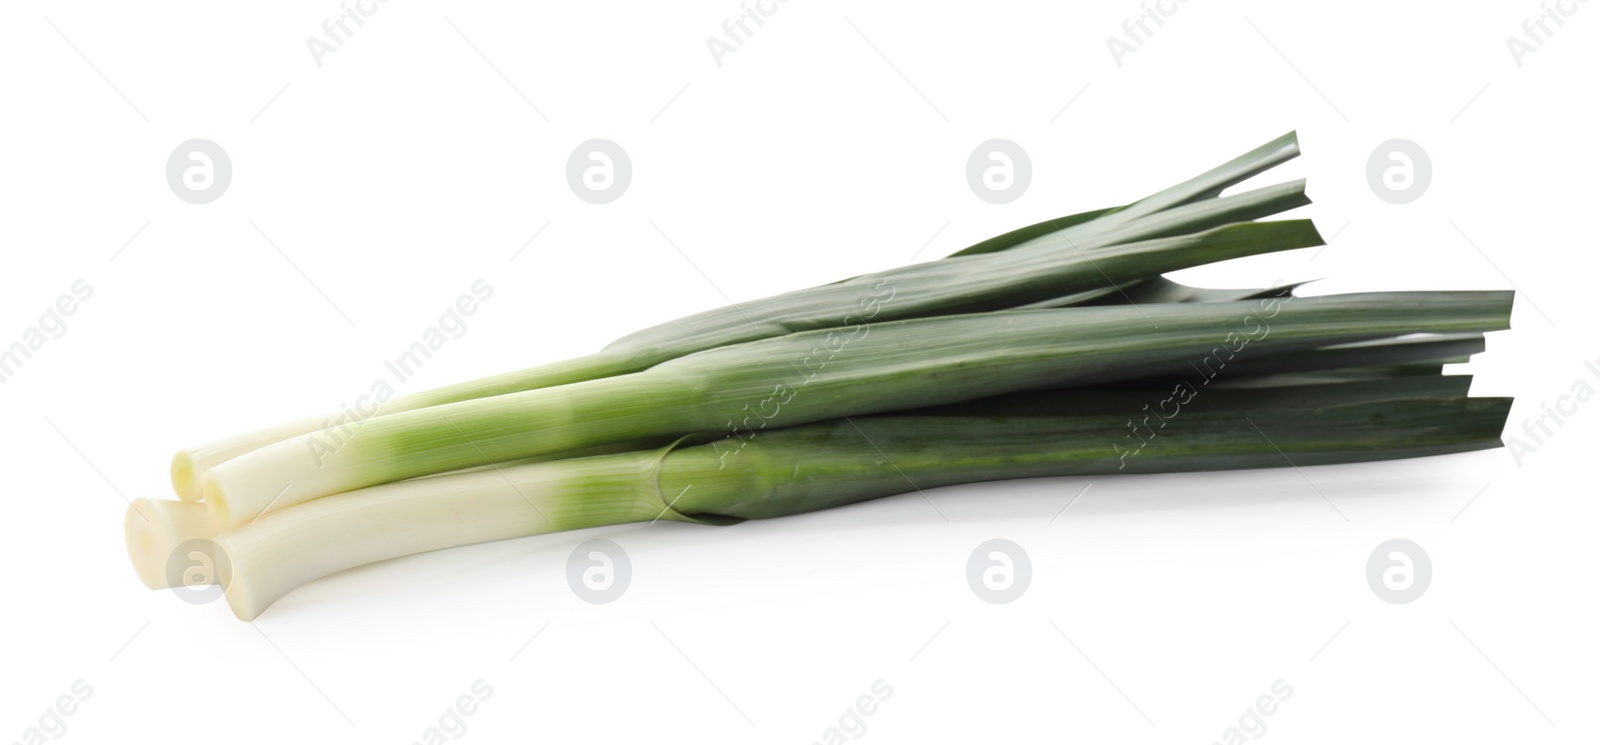 Photo of Fresh raw leeks on white background. Ripe onion